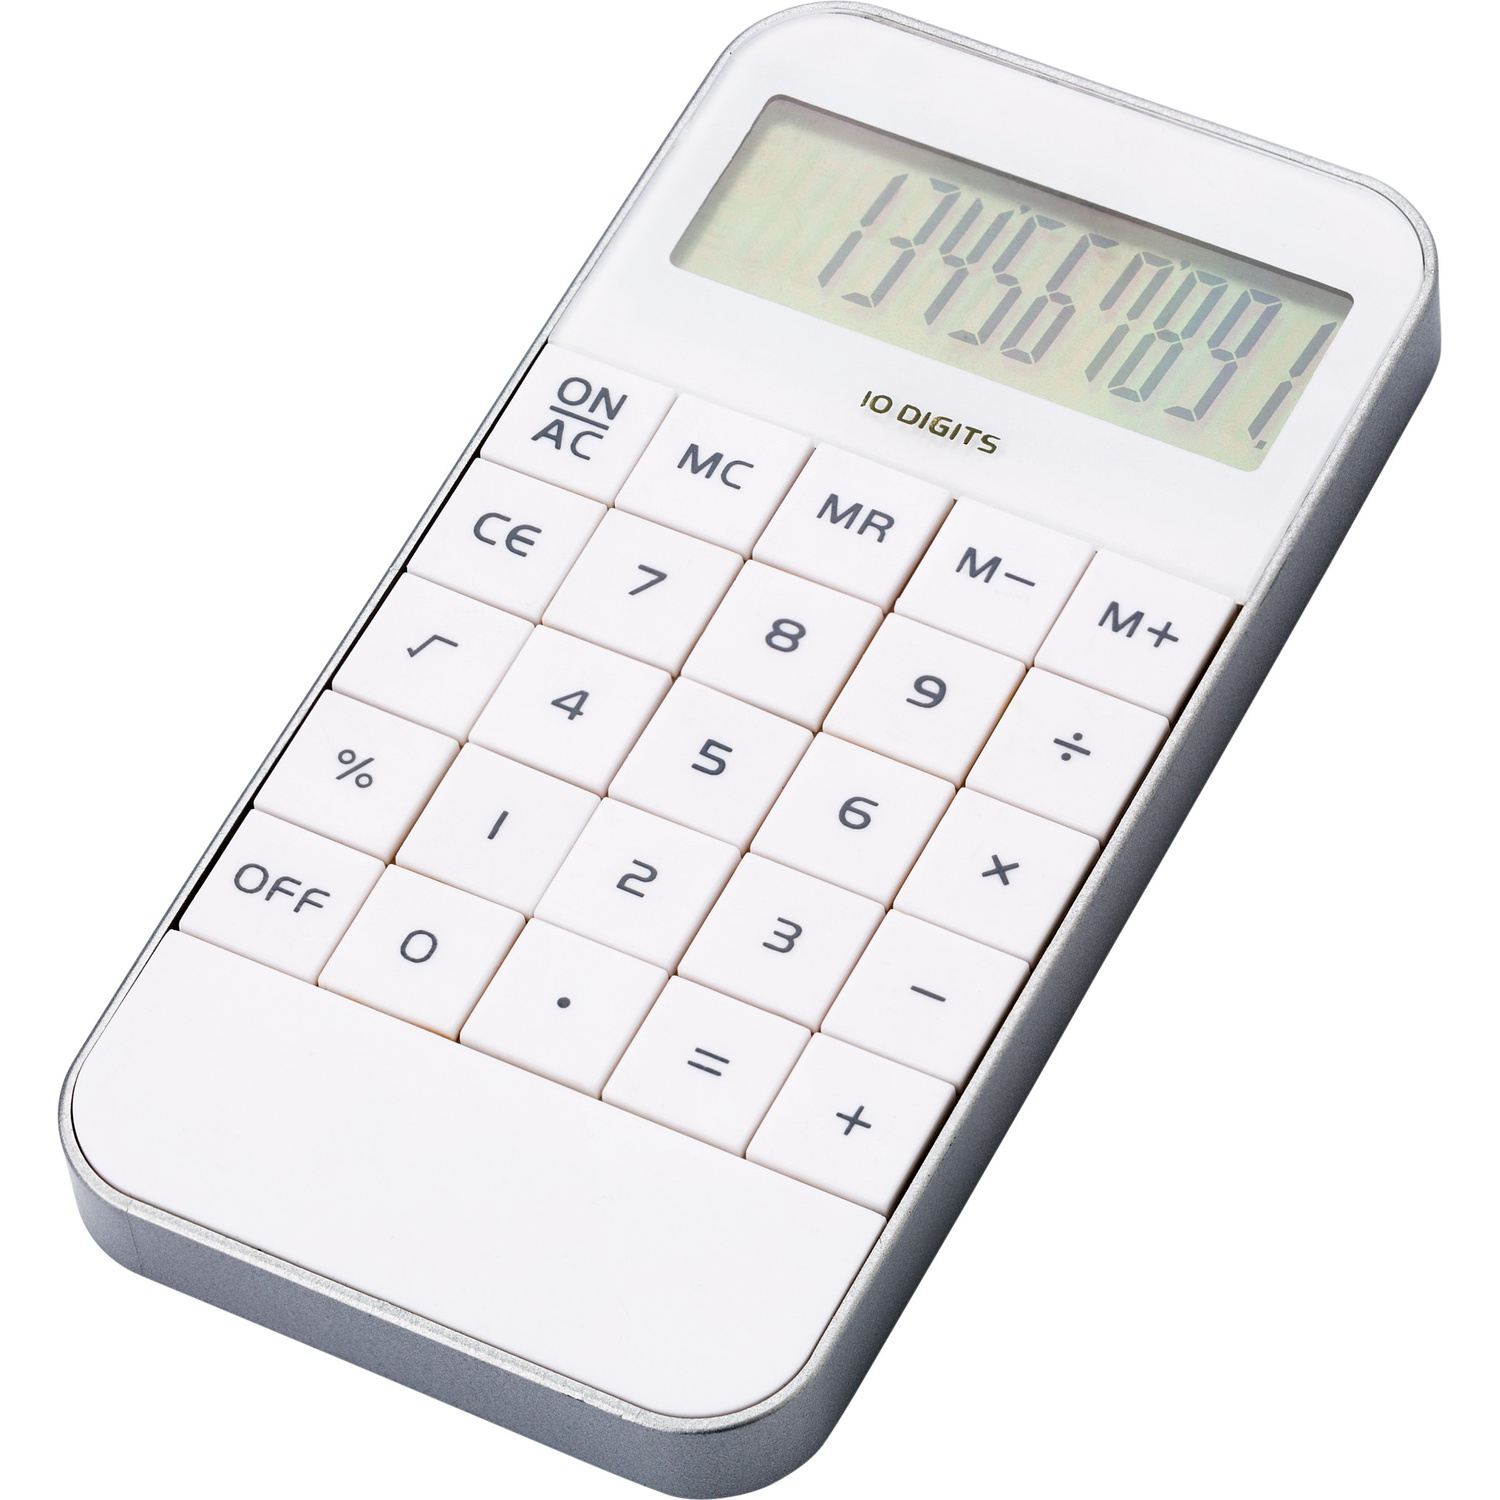 001140 002999999 3d045 frt pro01 fal - Pocket calculator